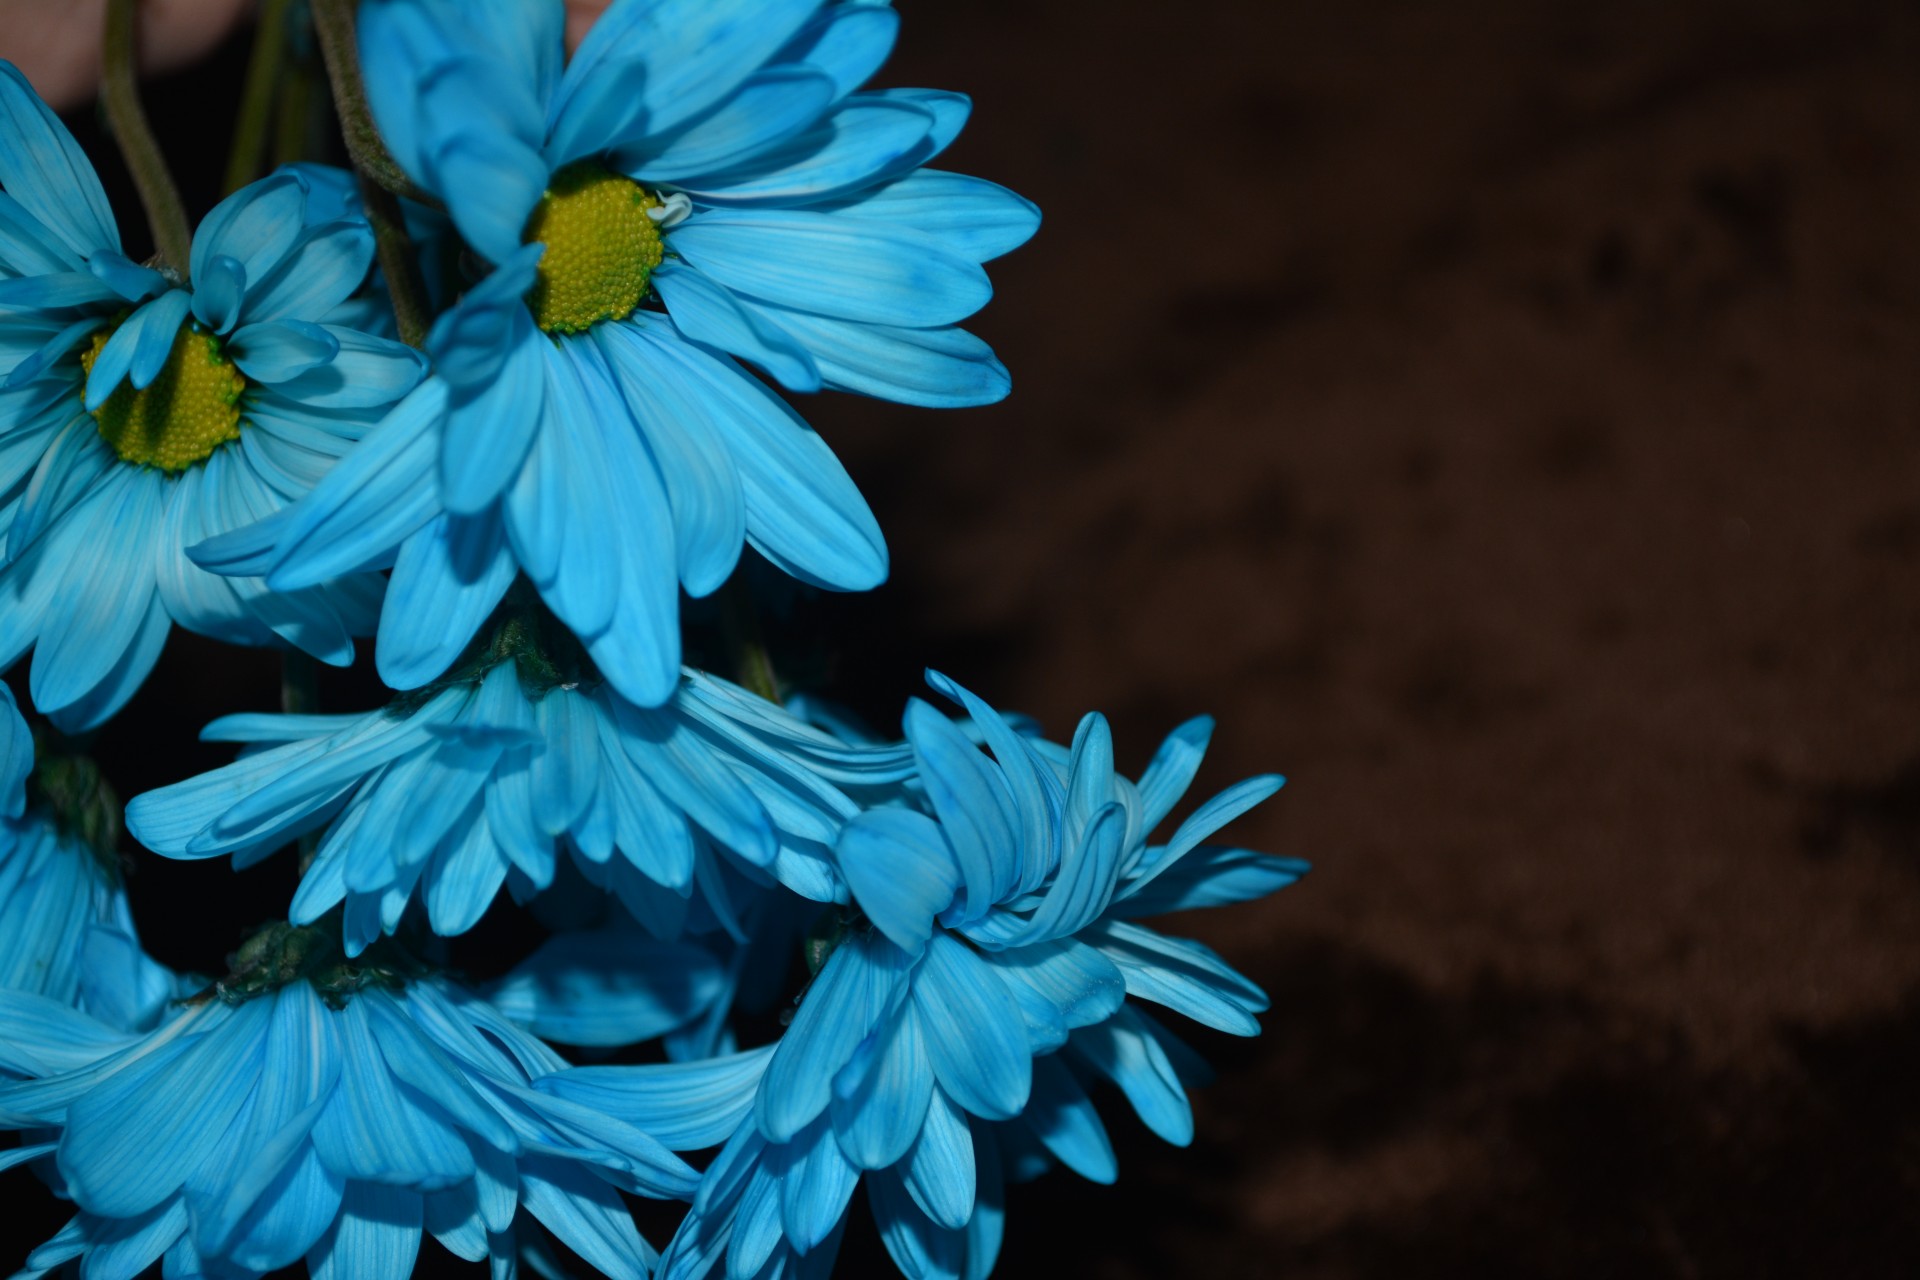 Flora Makrogänseblümchen Blooms Blau a1